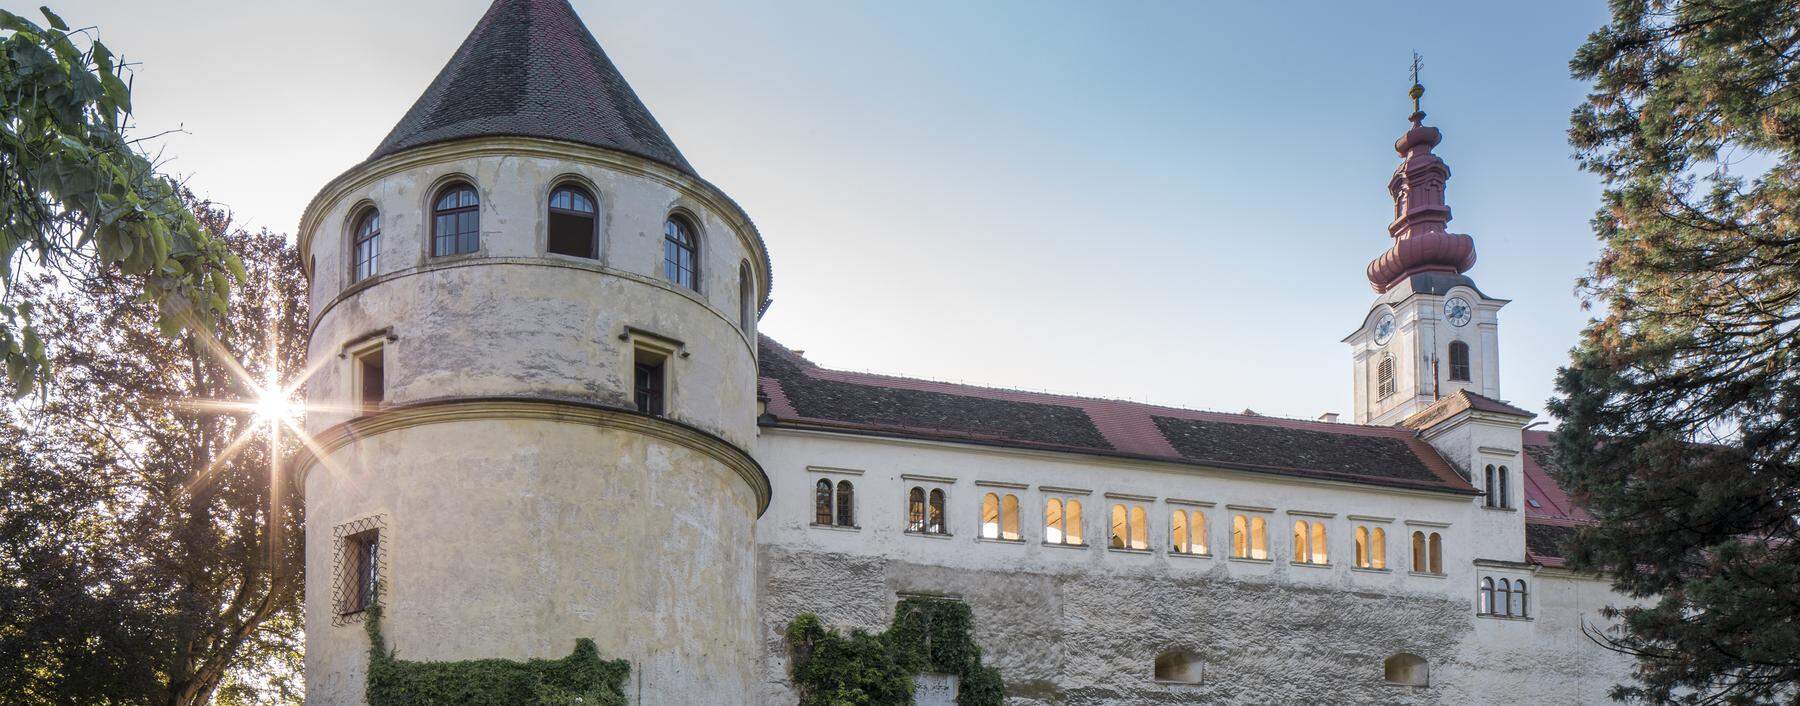 Das Renaissance-Schloss in der Steiermark öffnet sich jährlich für eine Design-Ausstellung, die den Designmonat Graz begleitet. 